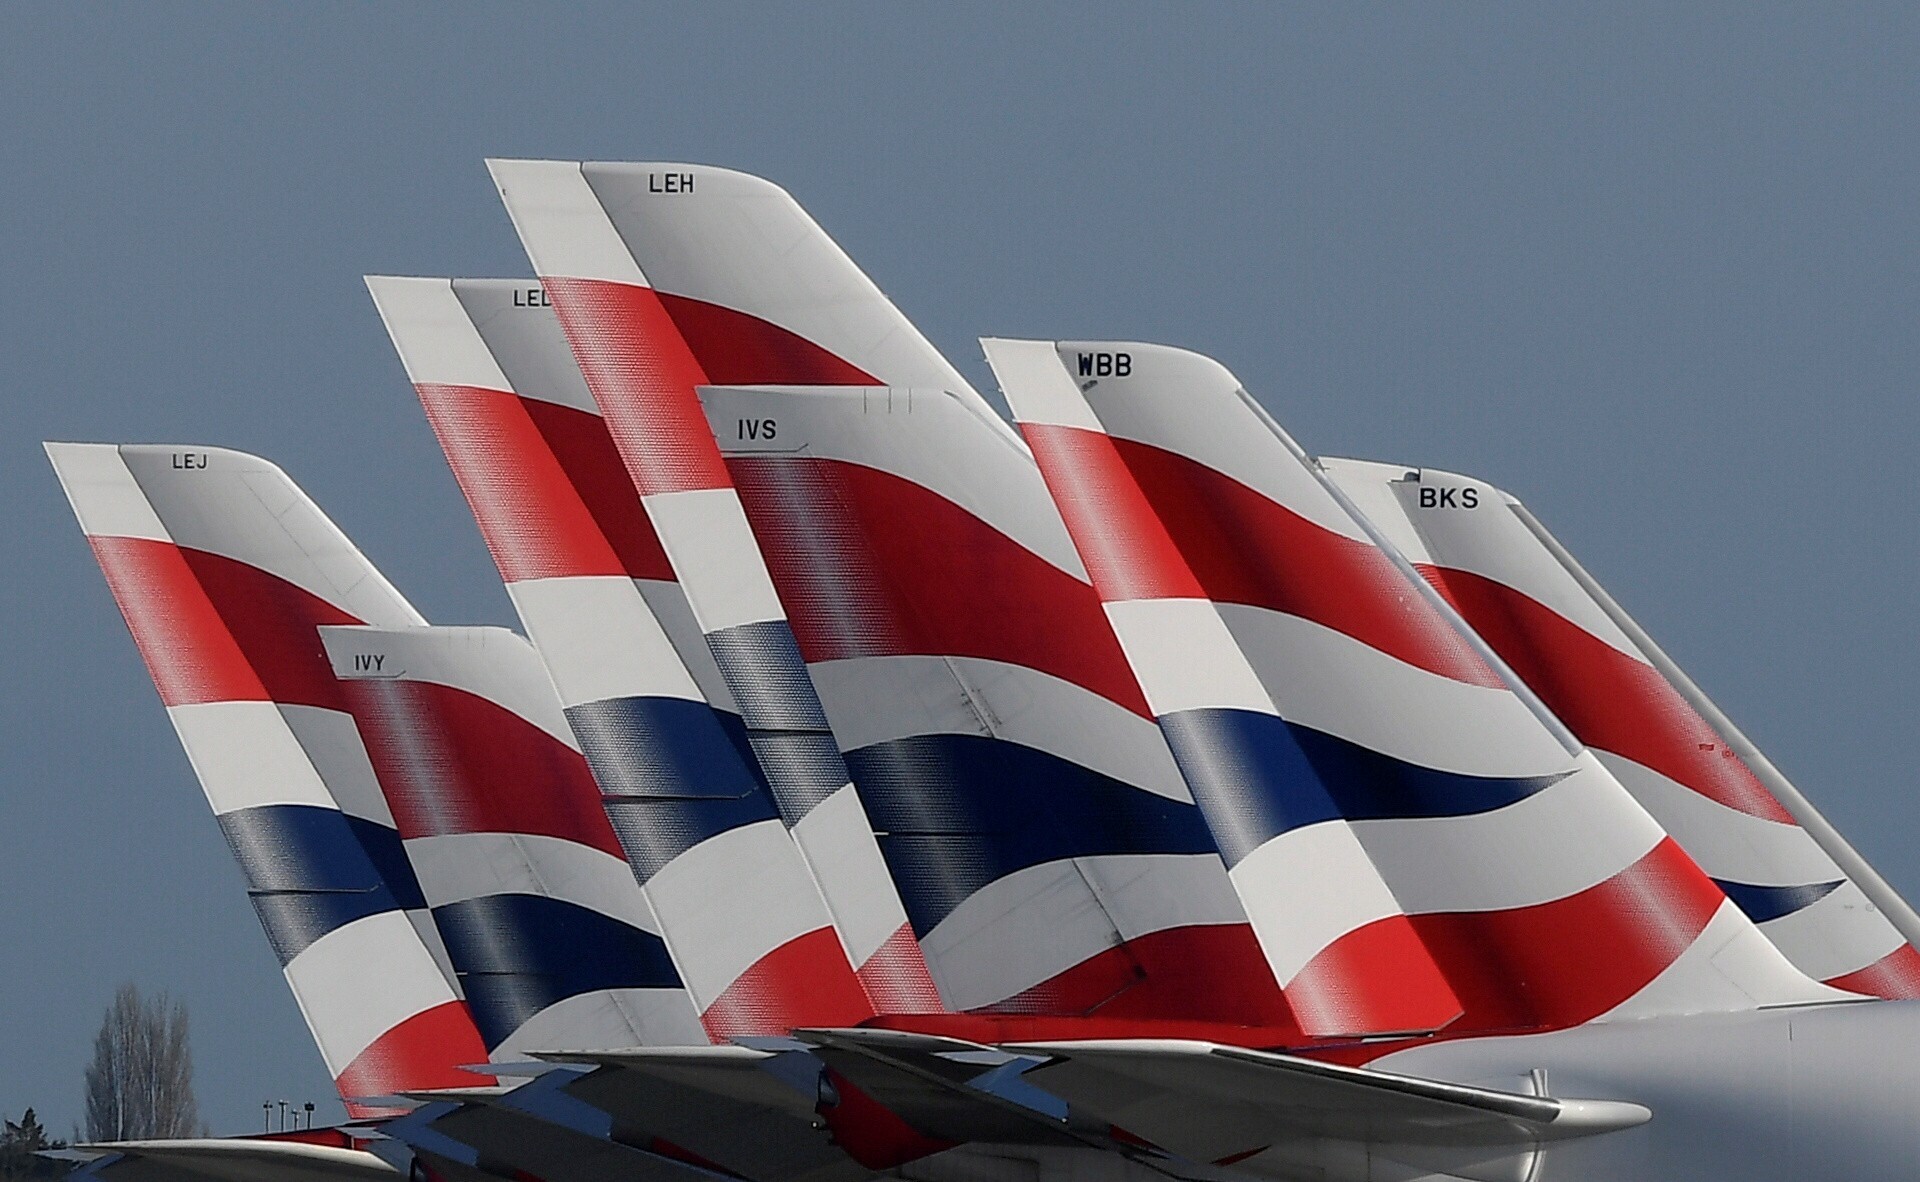 British Airways prohibido de arribar en Hong Kong - Noticias de aviación, aeropuertos y aerolíneas - Forum Aircraft, Airports and Airlines